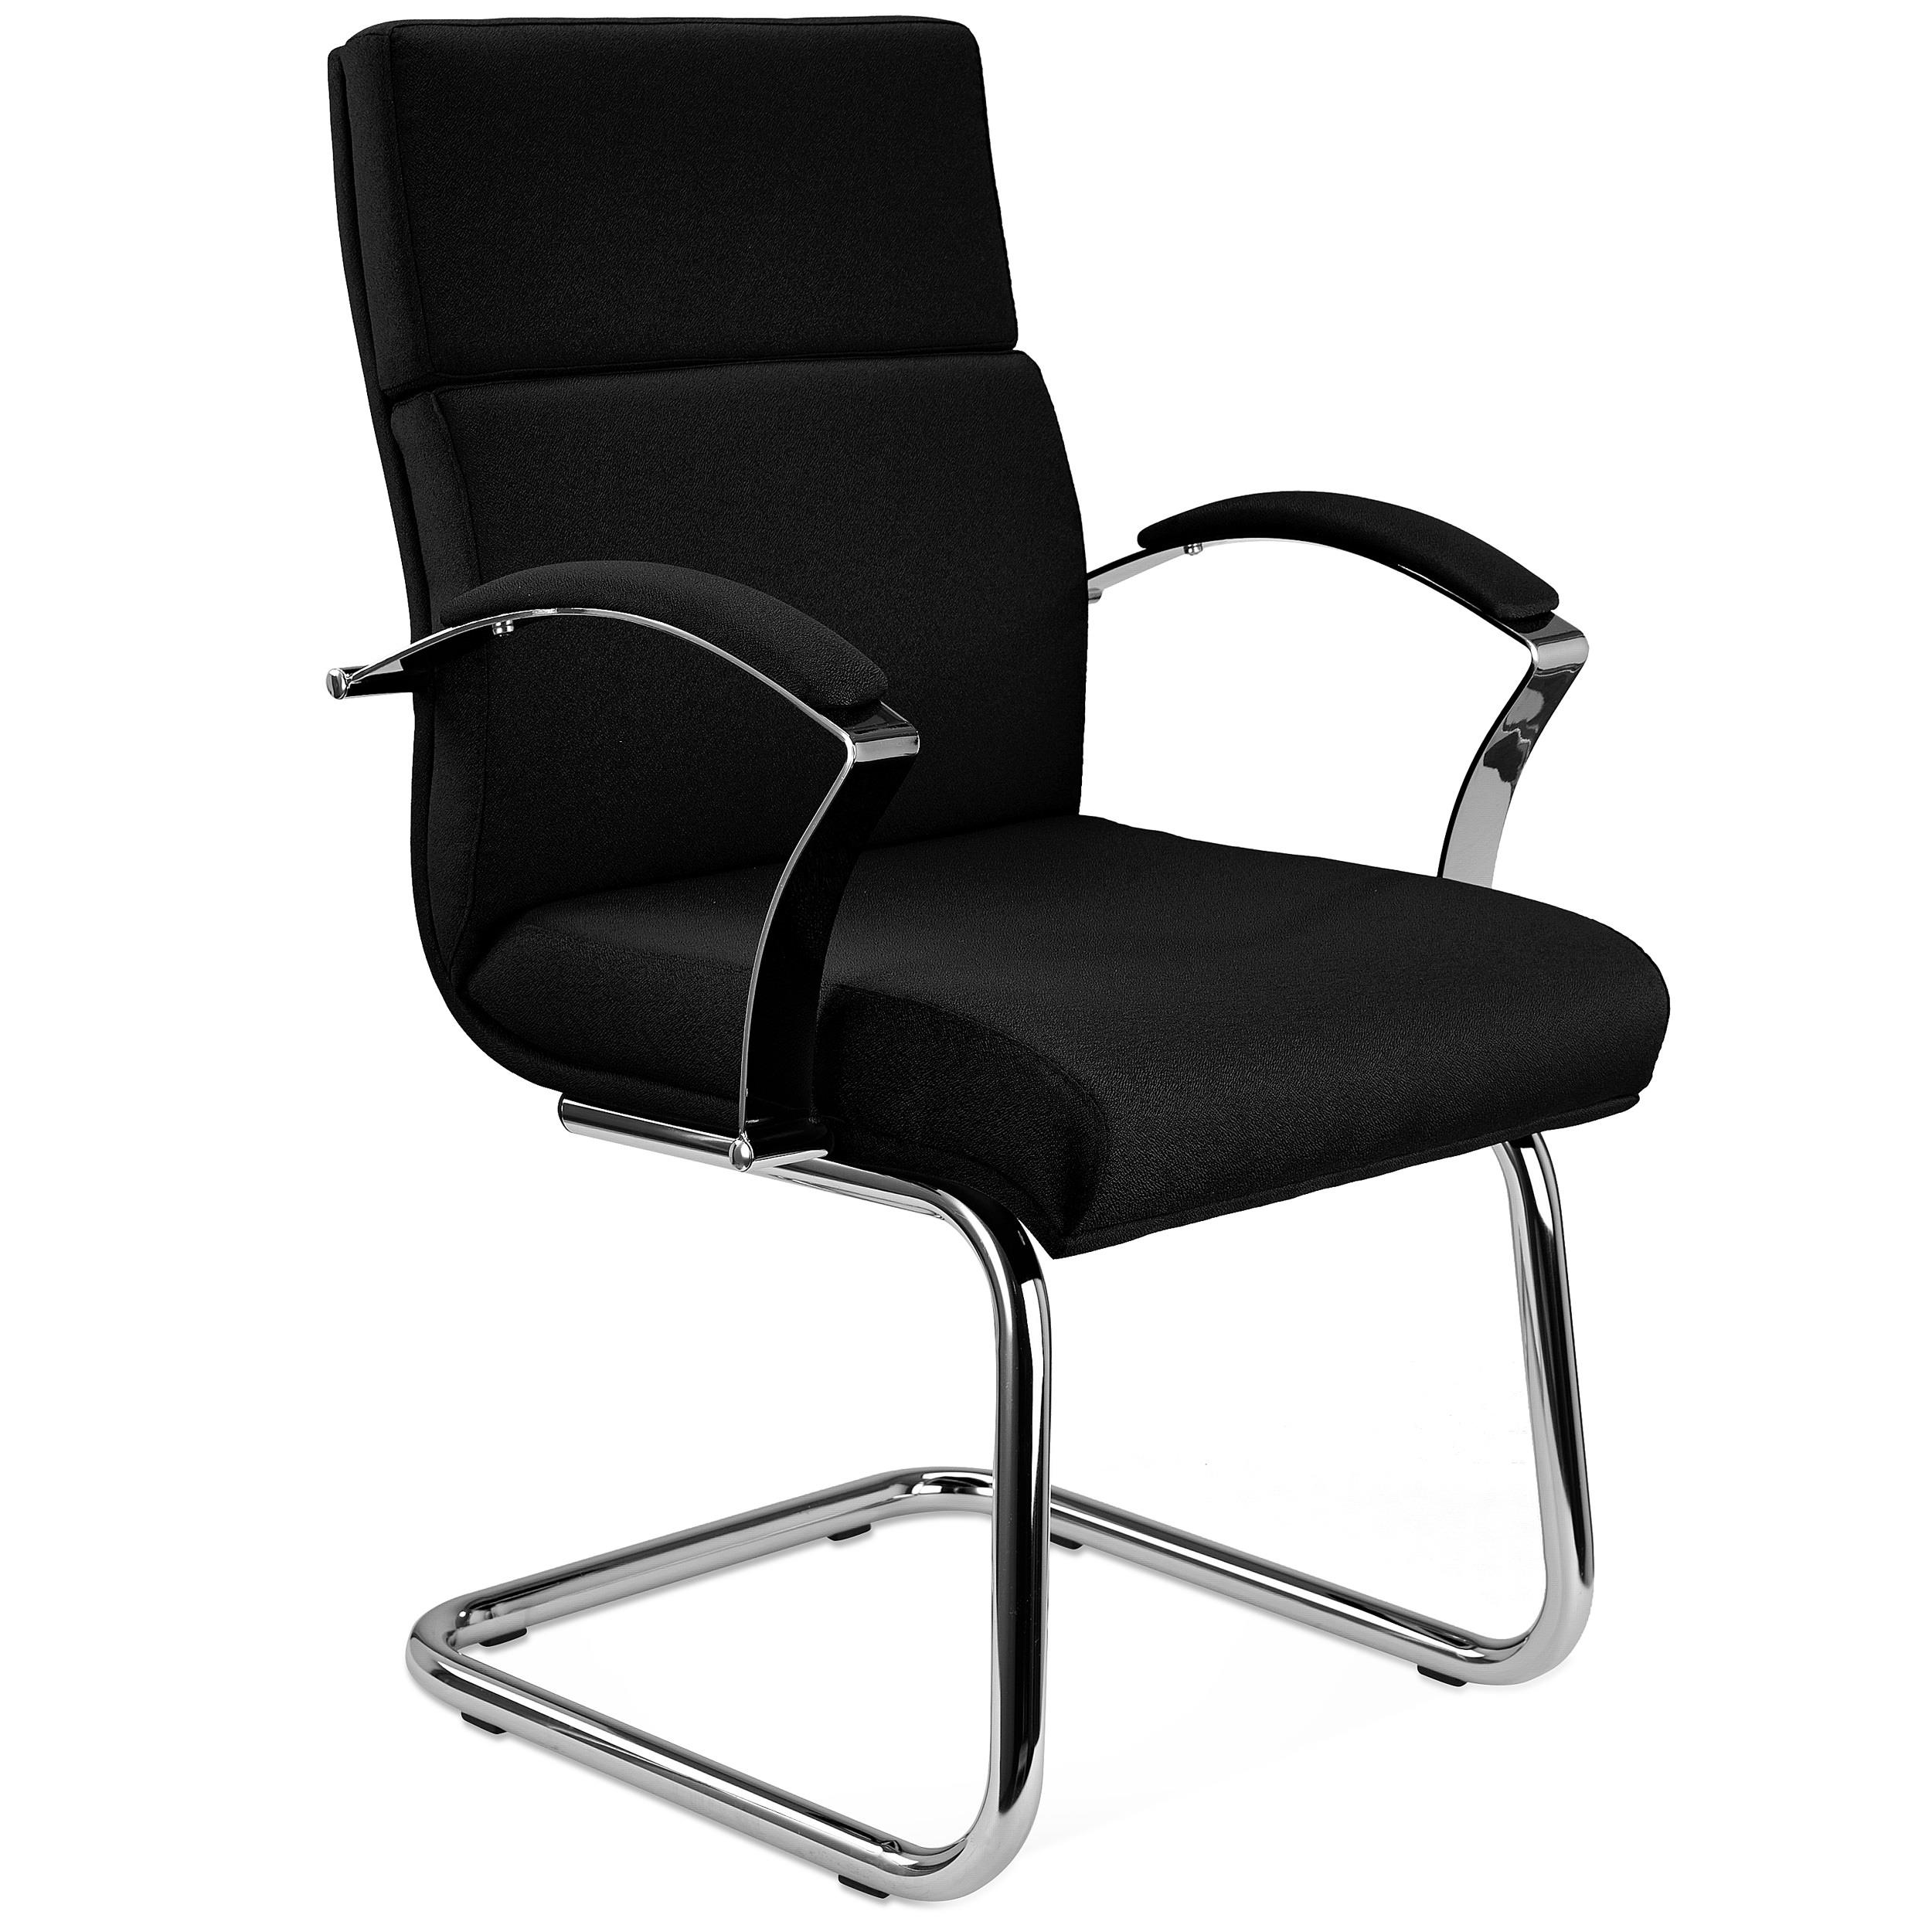 Chaise visiteur RABAT TISSU, Grande Qualité et Design, couleur Noir